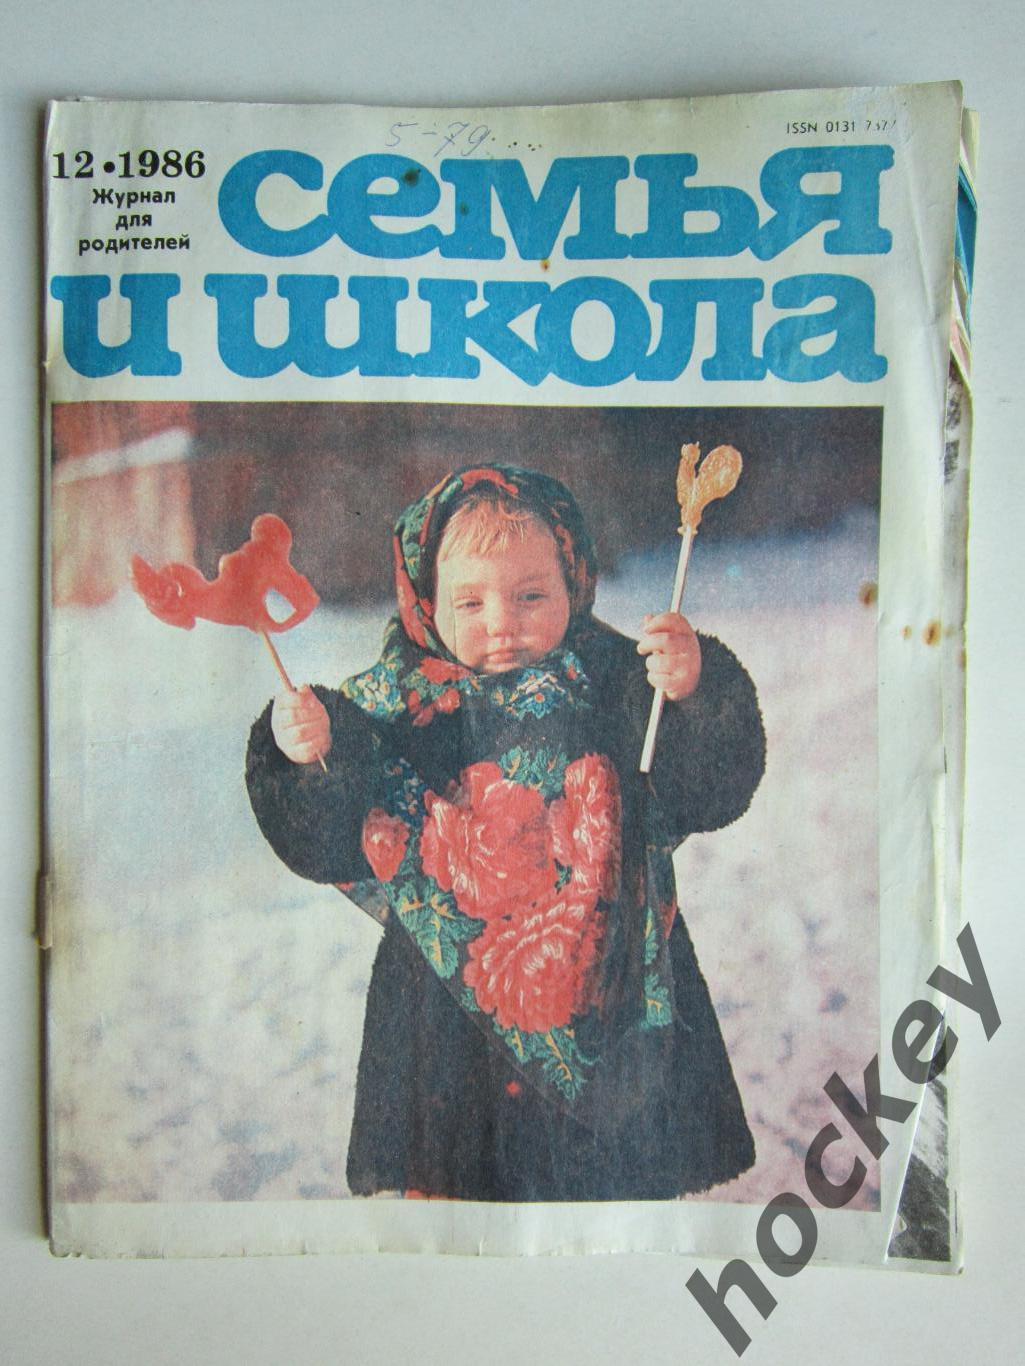 Журнал Семья и школа № 12.1986